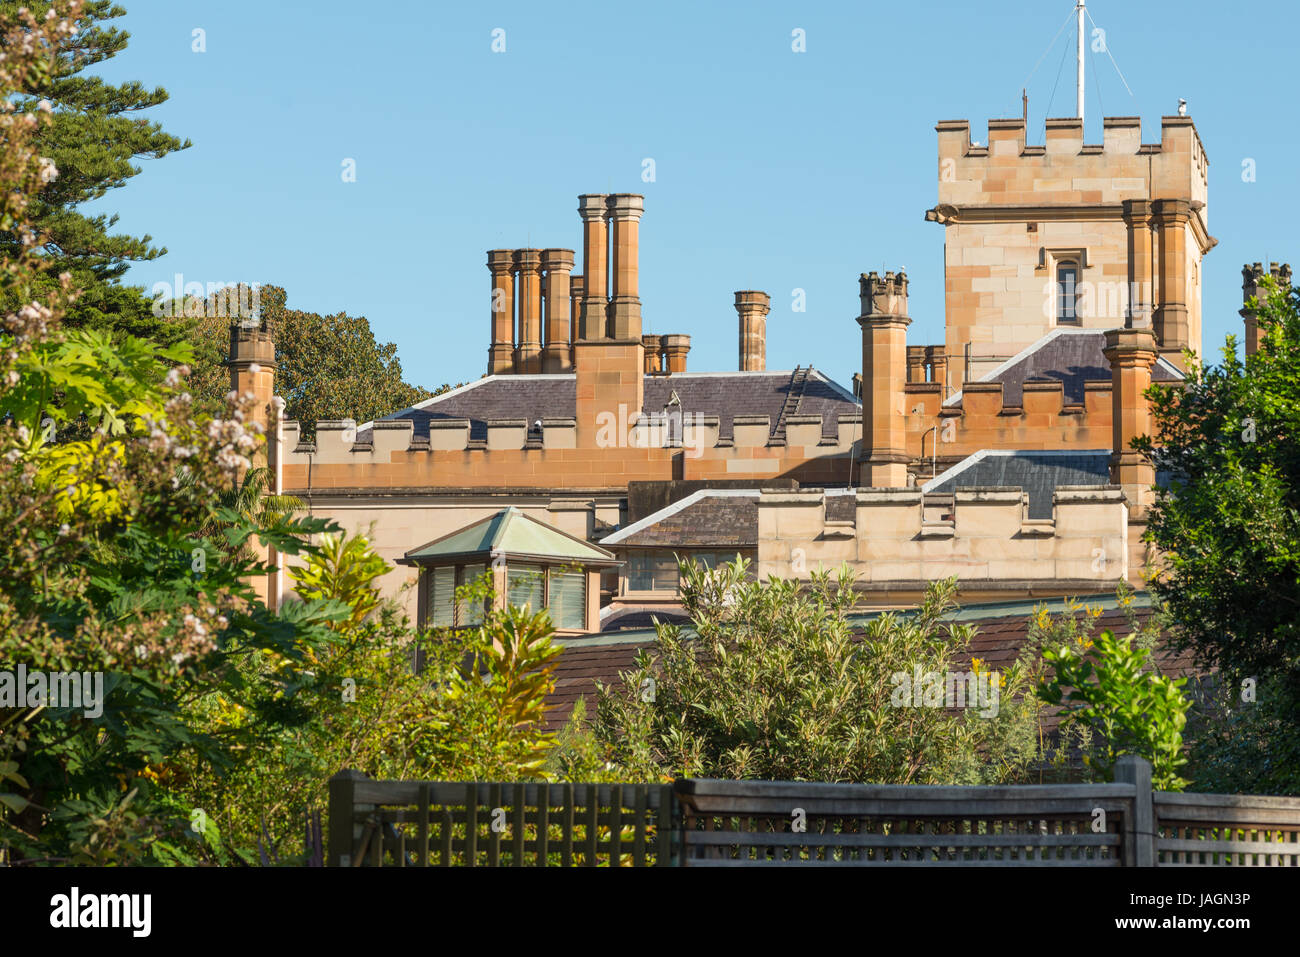 Government house next to Royal Botanic Gardens, Sydney, NSW, Australia. Stock Photo